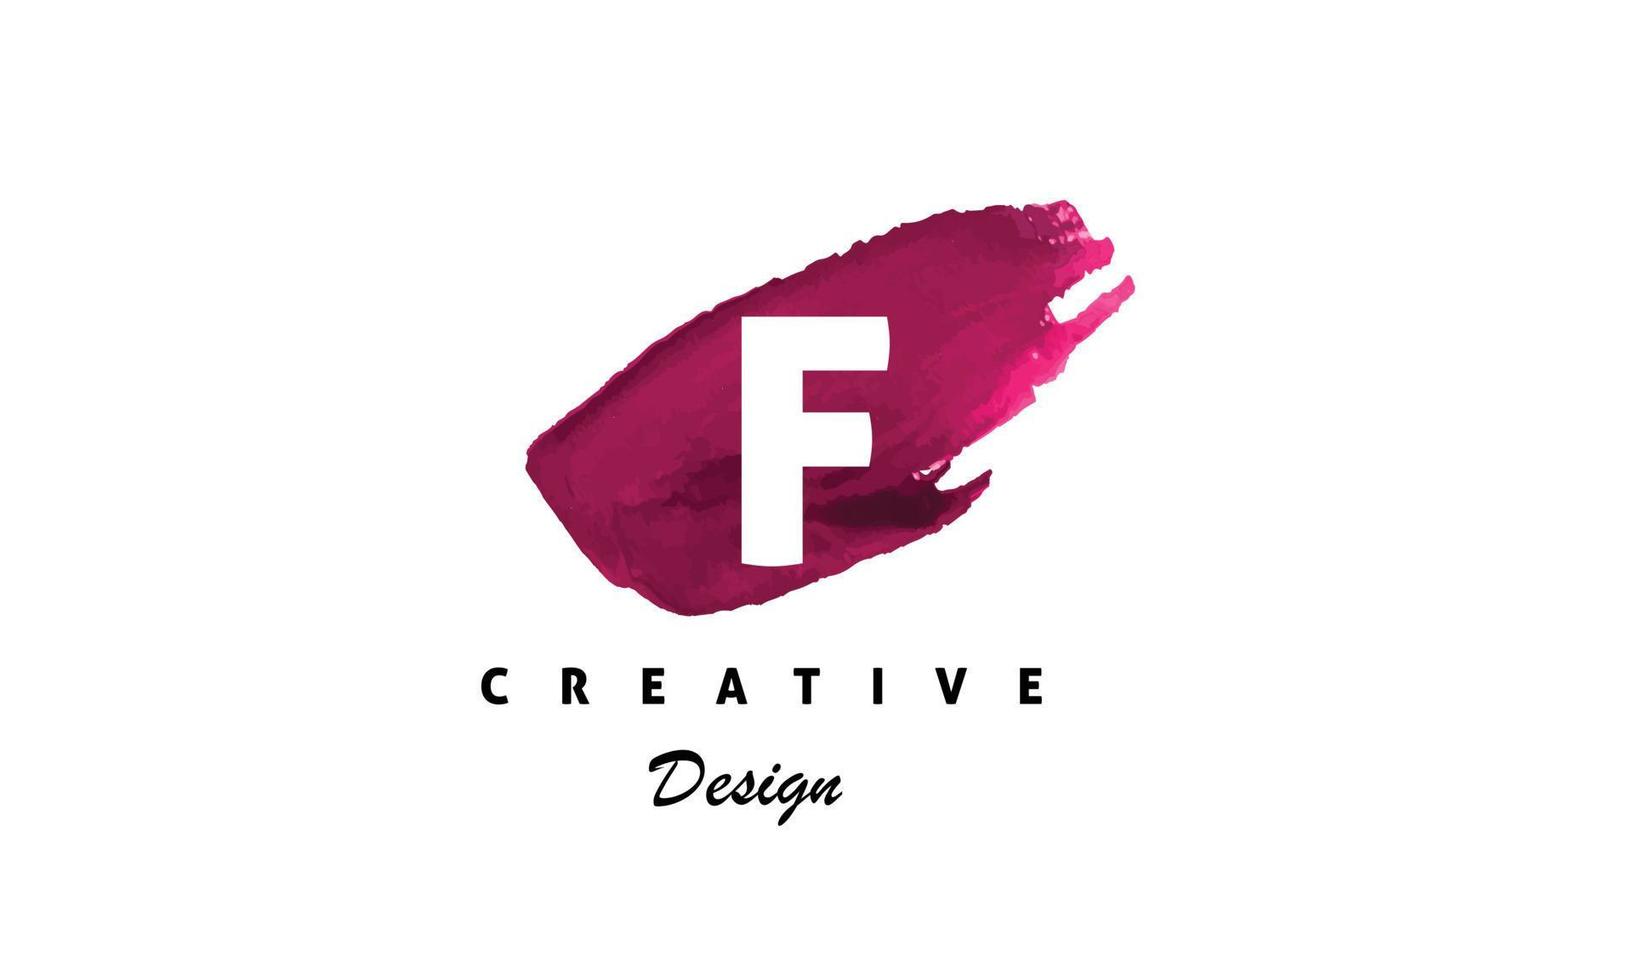 f alfabeto design vettore con acqua colore spazzola icona creativo moderno di moda logo su bianca sfondo